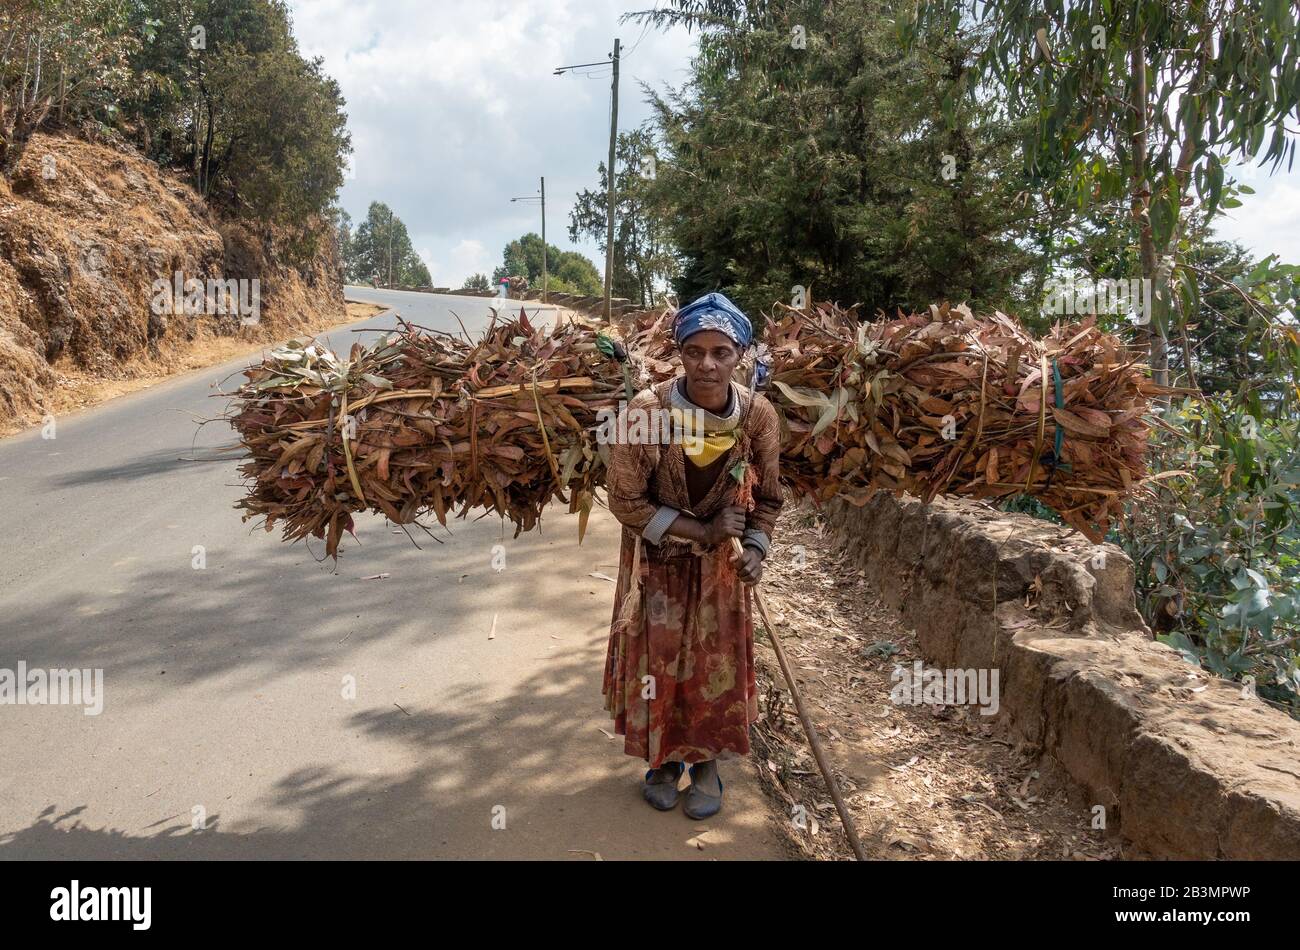 Les femmes qui font le travail acharné à Addis-Abeba, en Ethiopie, transportant du bois de chauffage sur le marché Banque D'Images